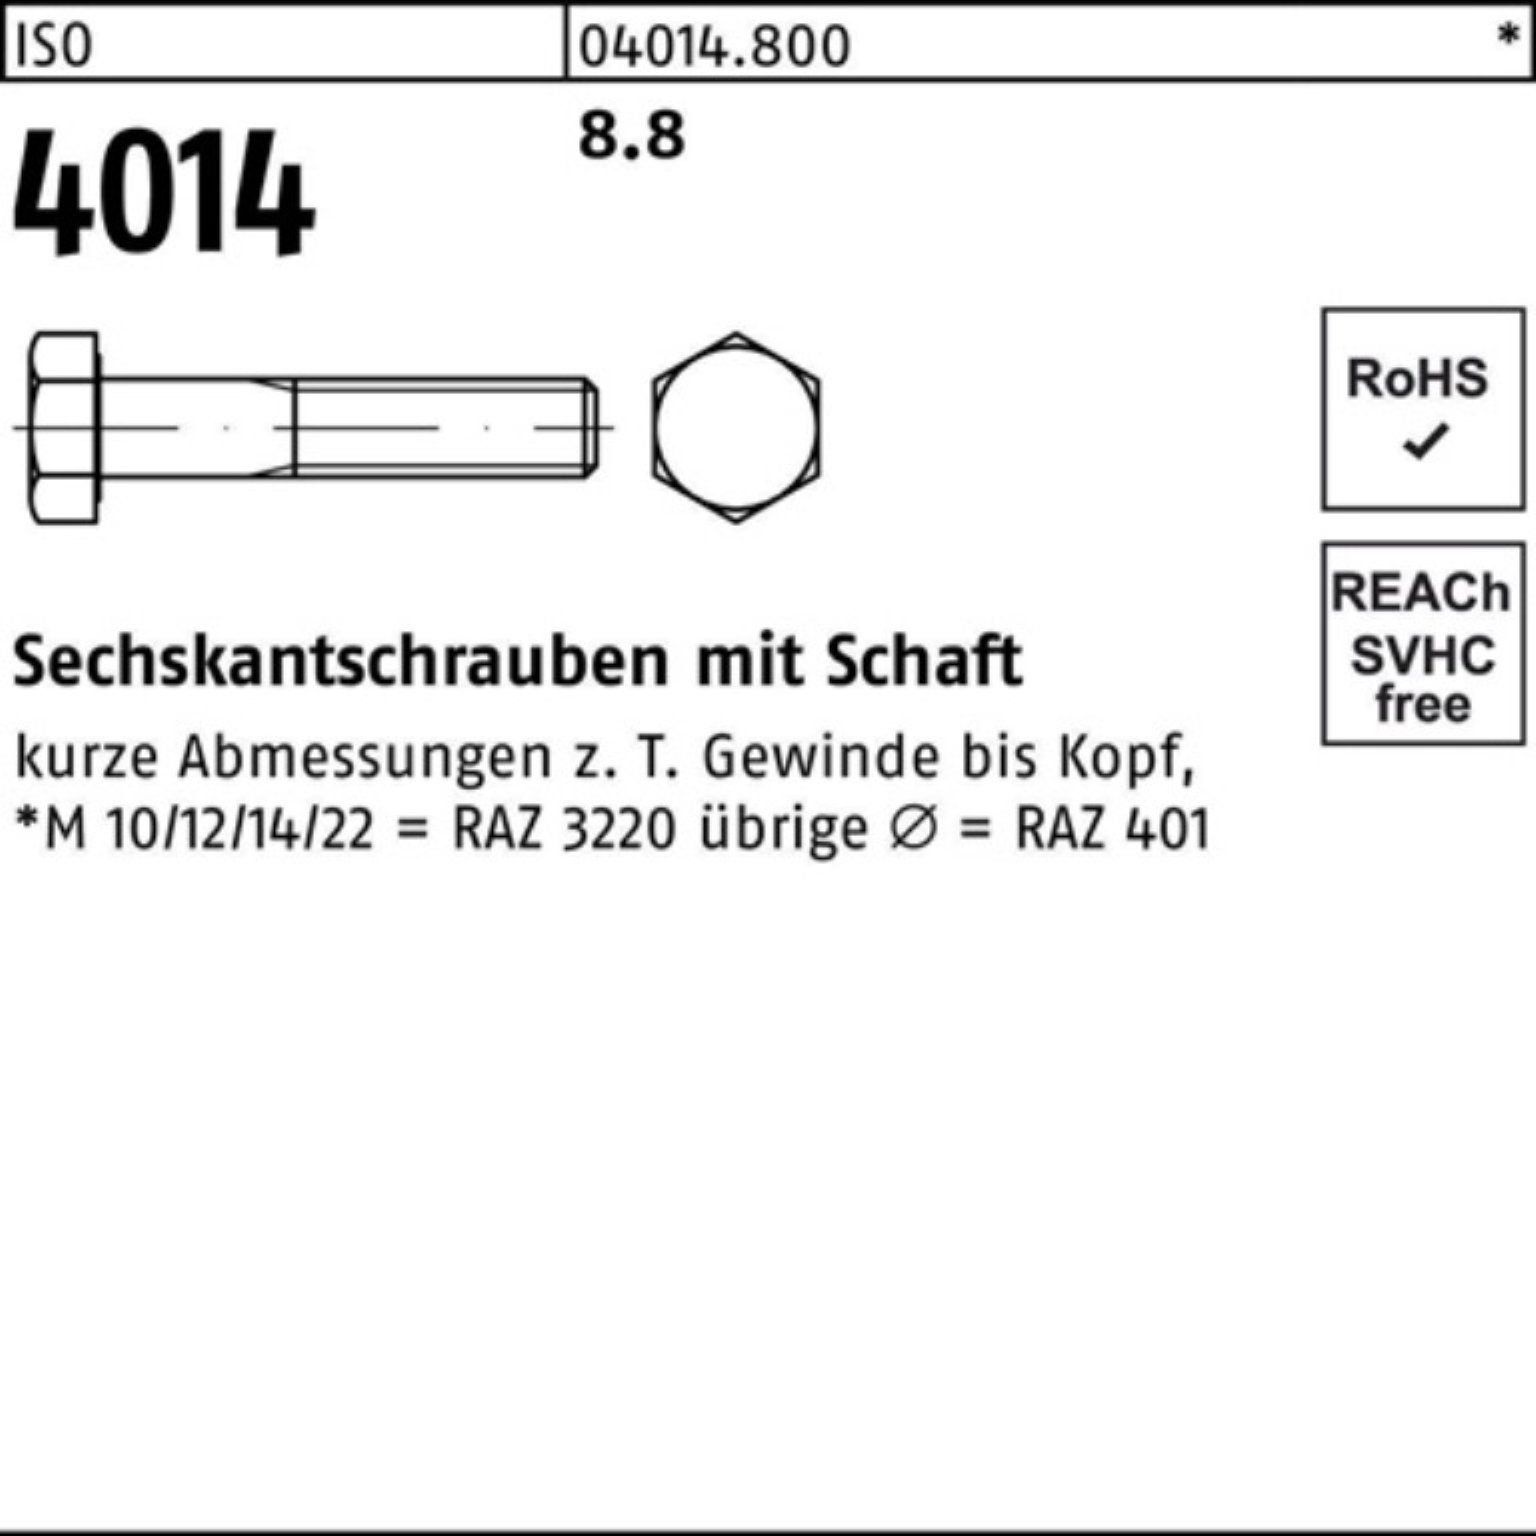 Bufab Sechskantschraube 100er Schaft 8.8 ISO Pack 4014 Sechskantschraube 150 1 Stück ISO M27x